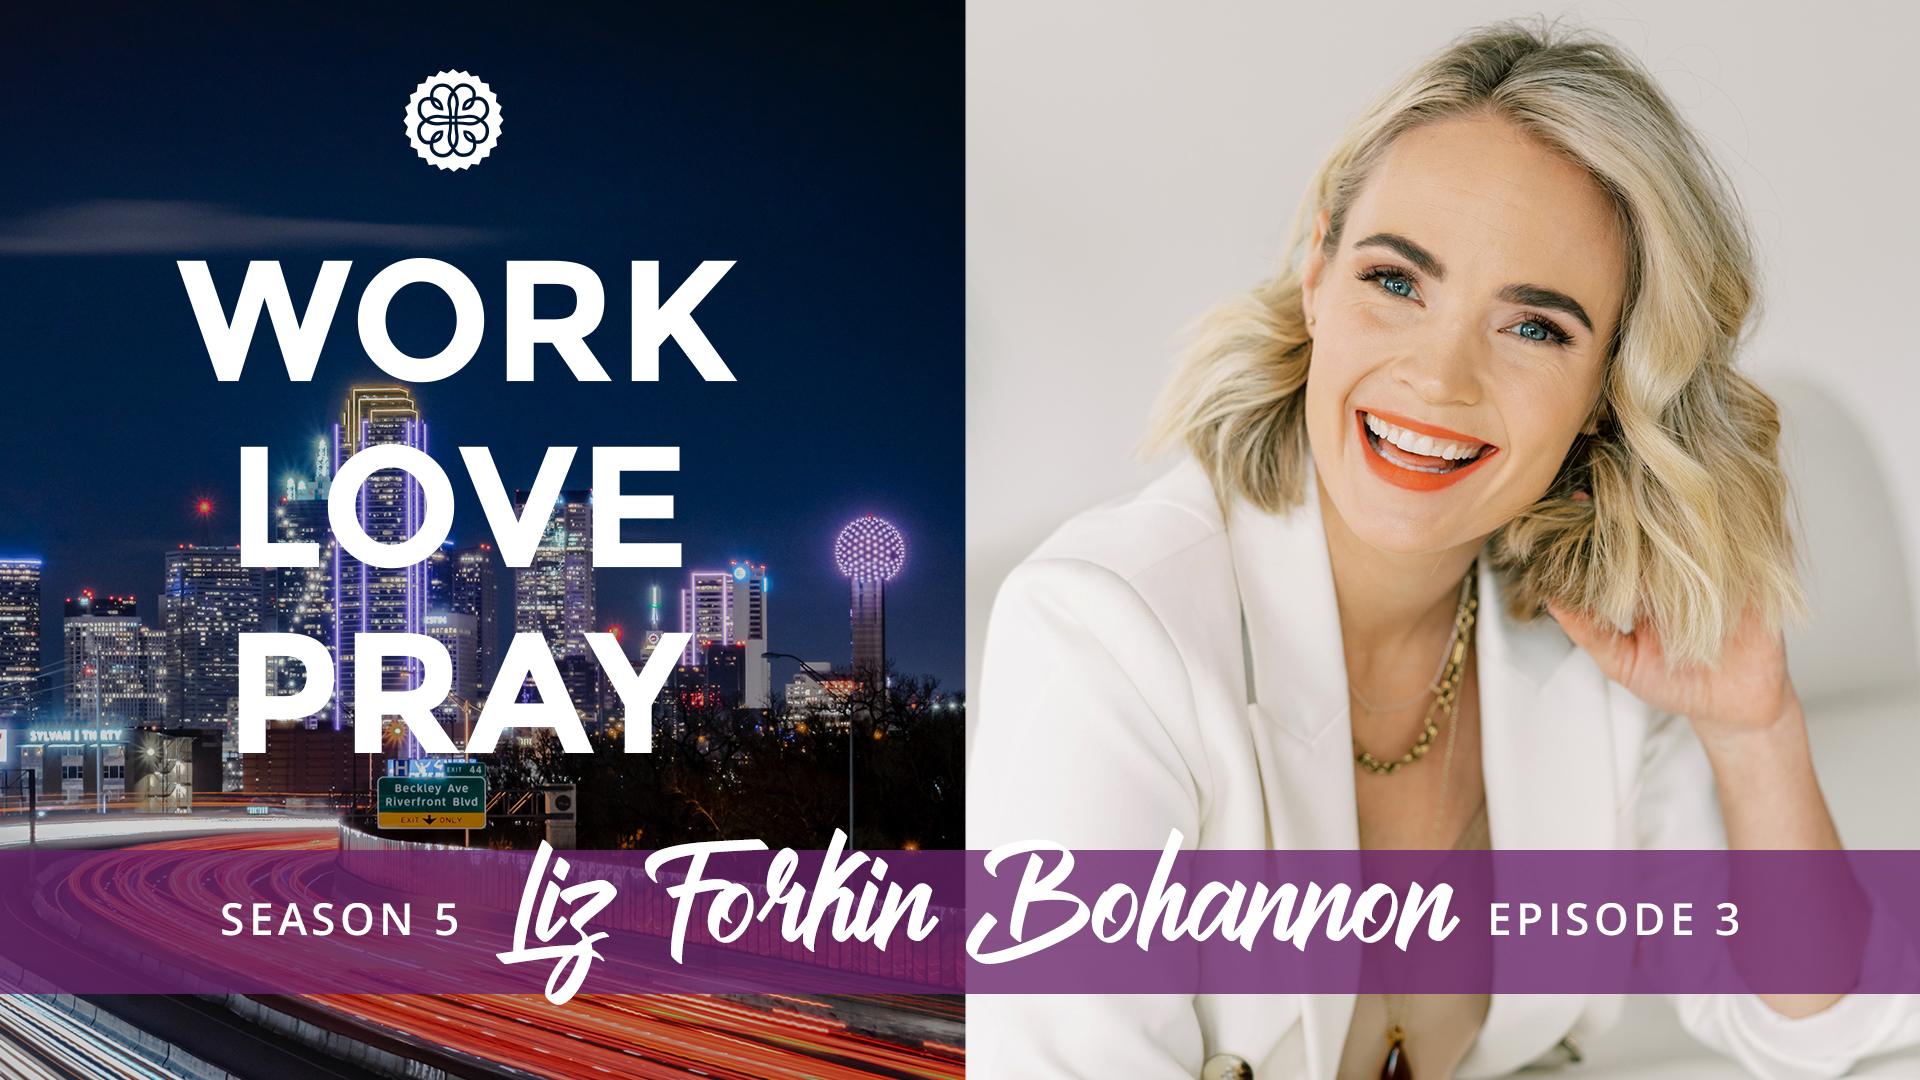 Work, Love, Pray episode 3 with Liz Forkin Bohannon